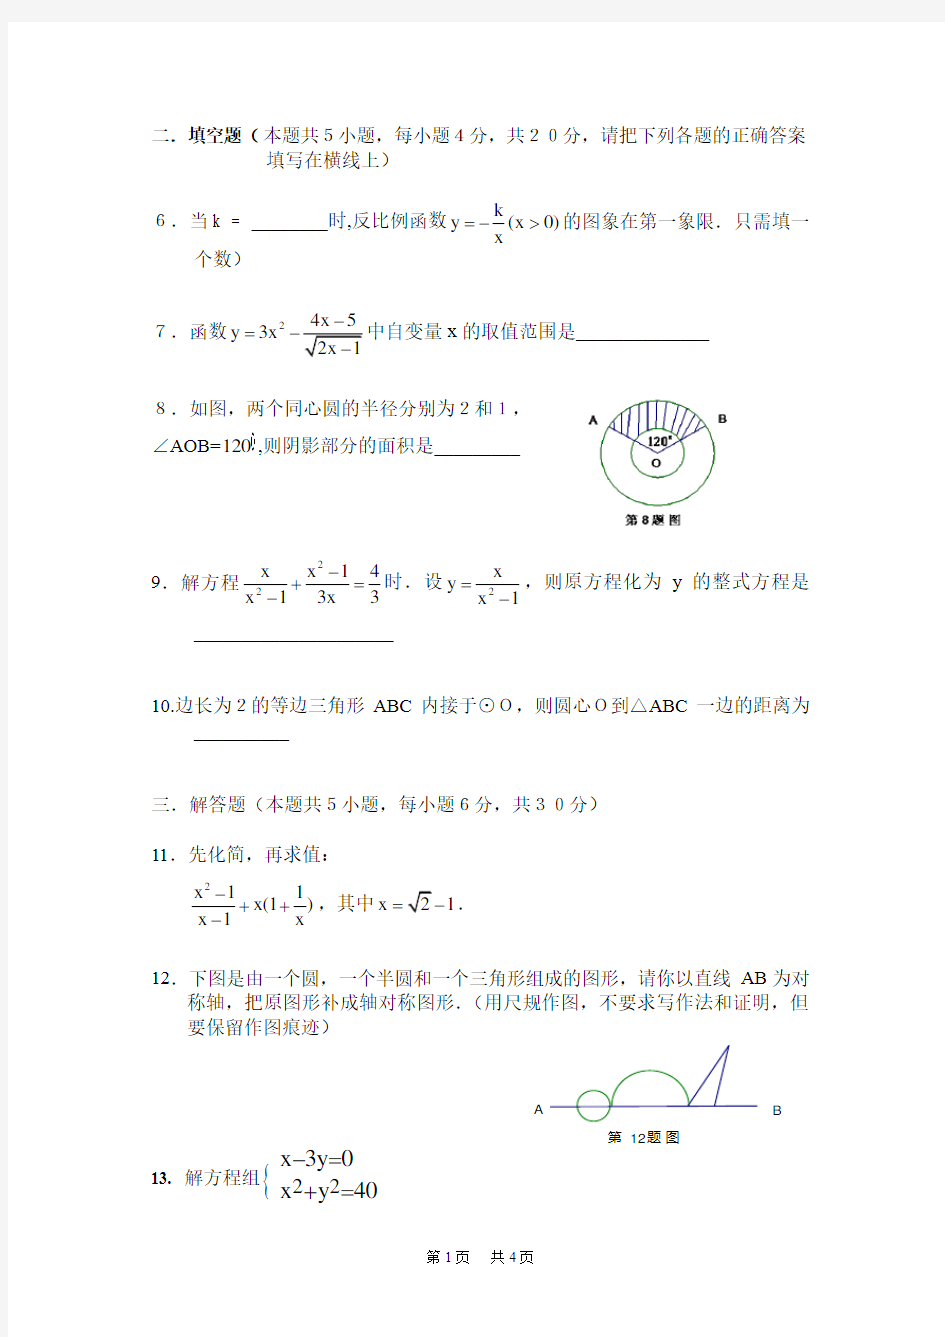 2020年广东省高中阶段学校招生考试数学试卷